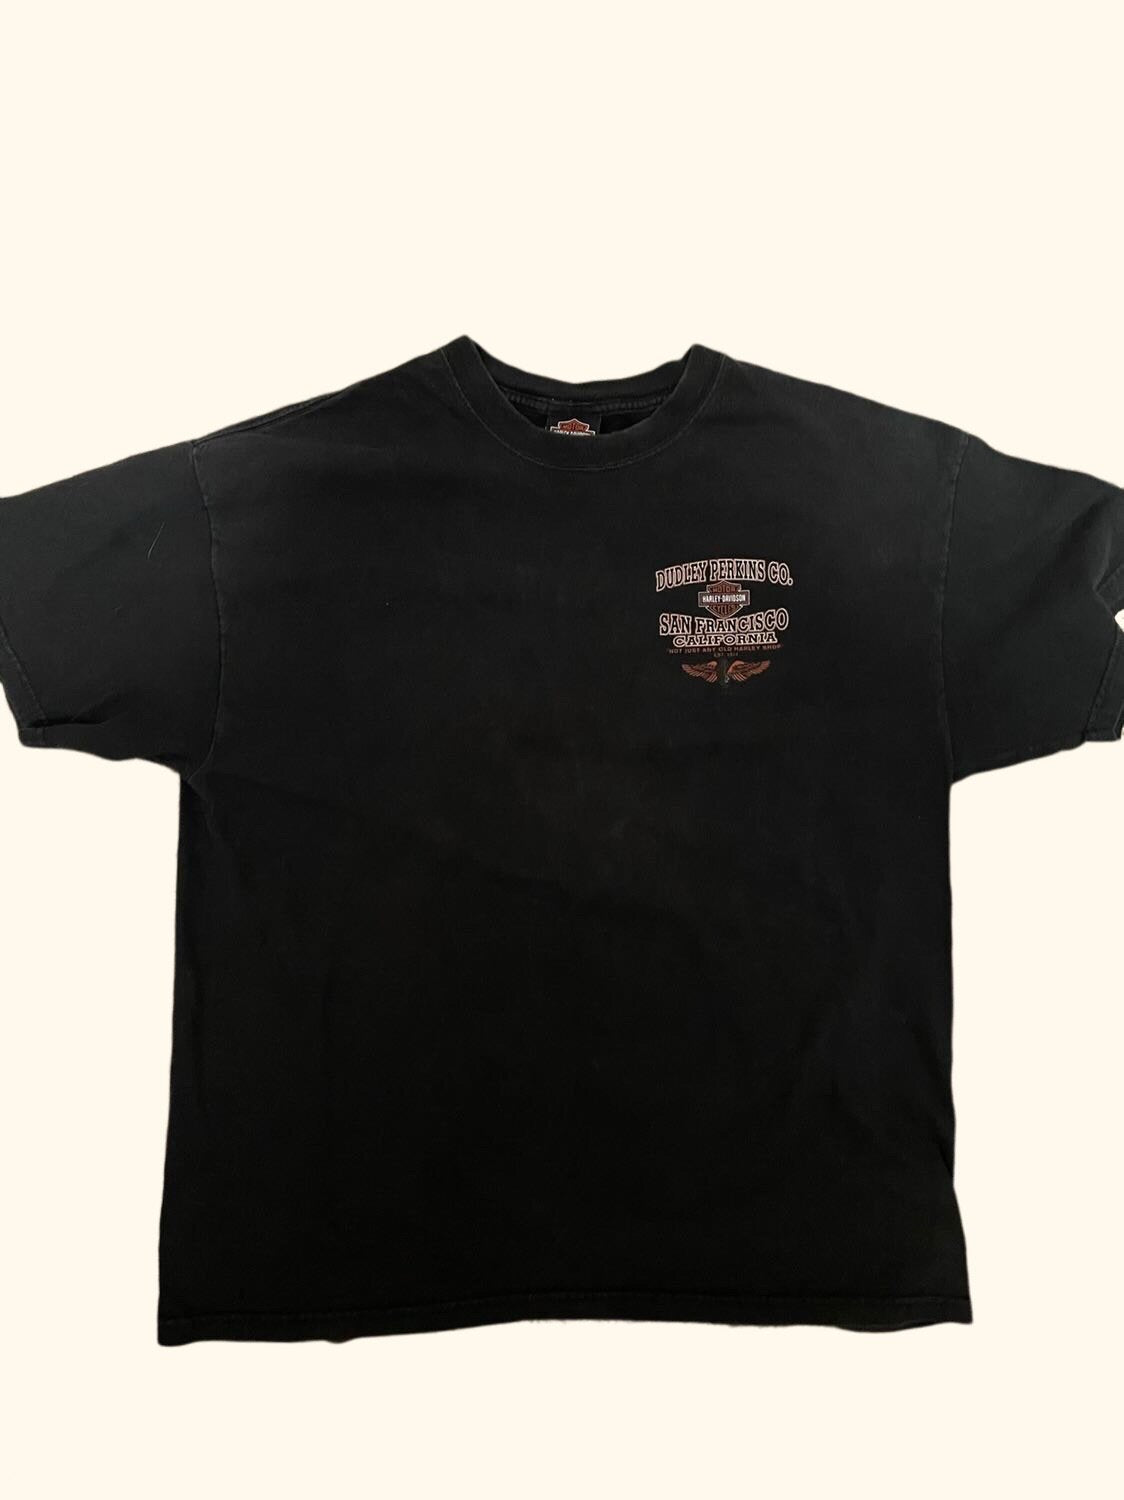 1999 Frisco Harley Davidson Shirt Size XL